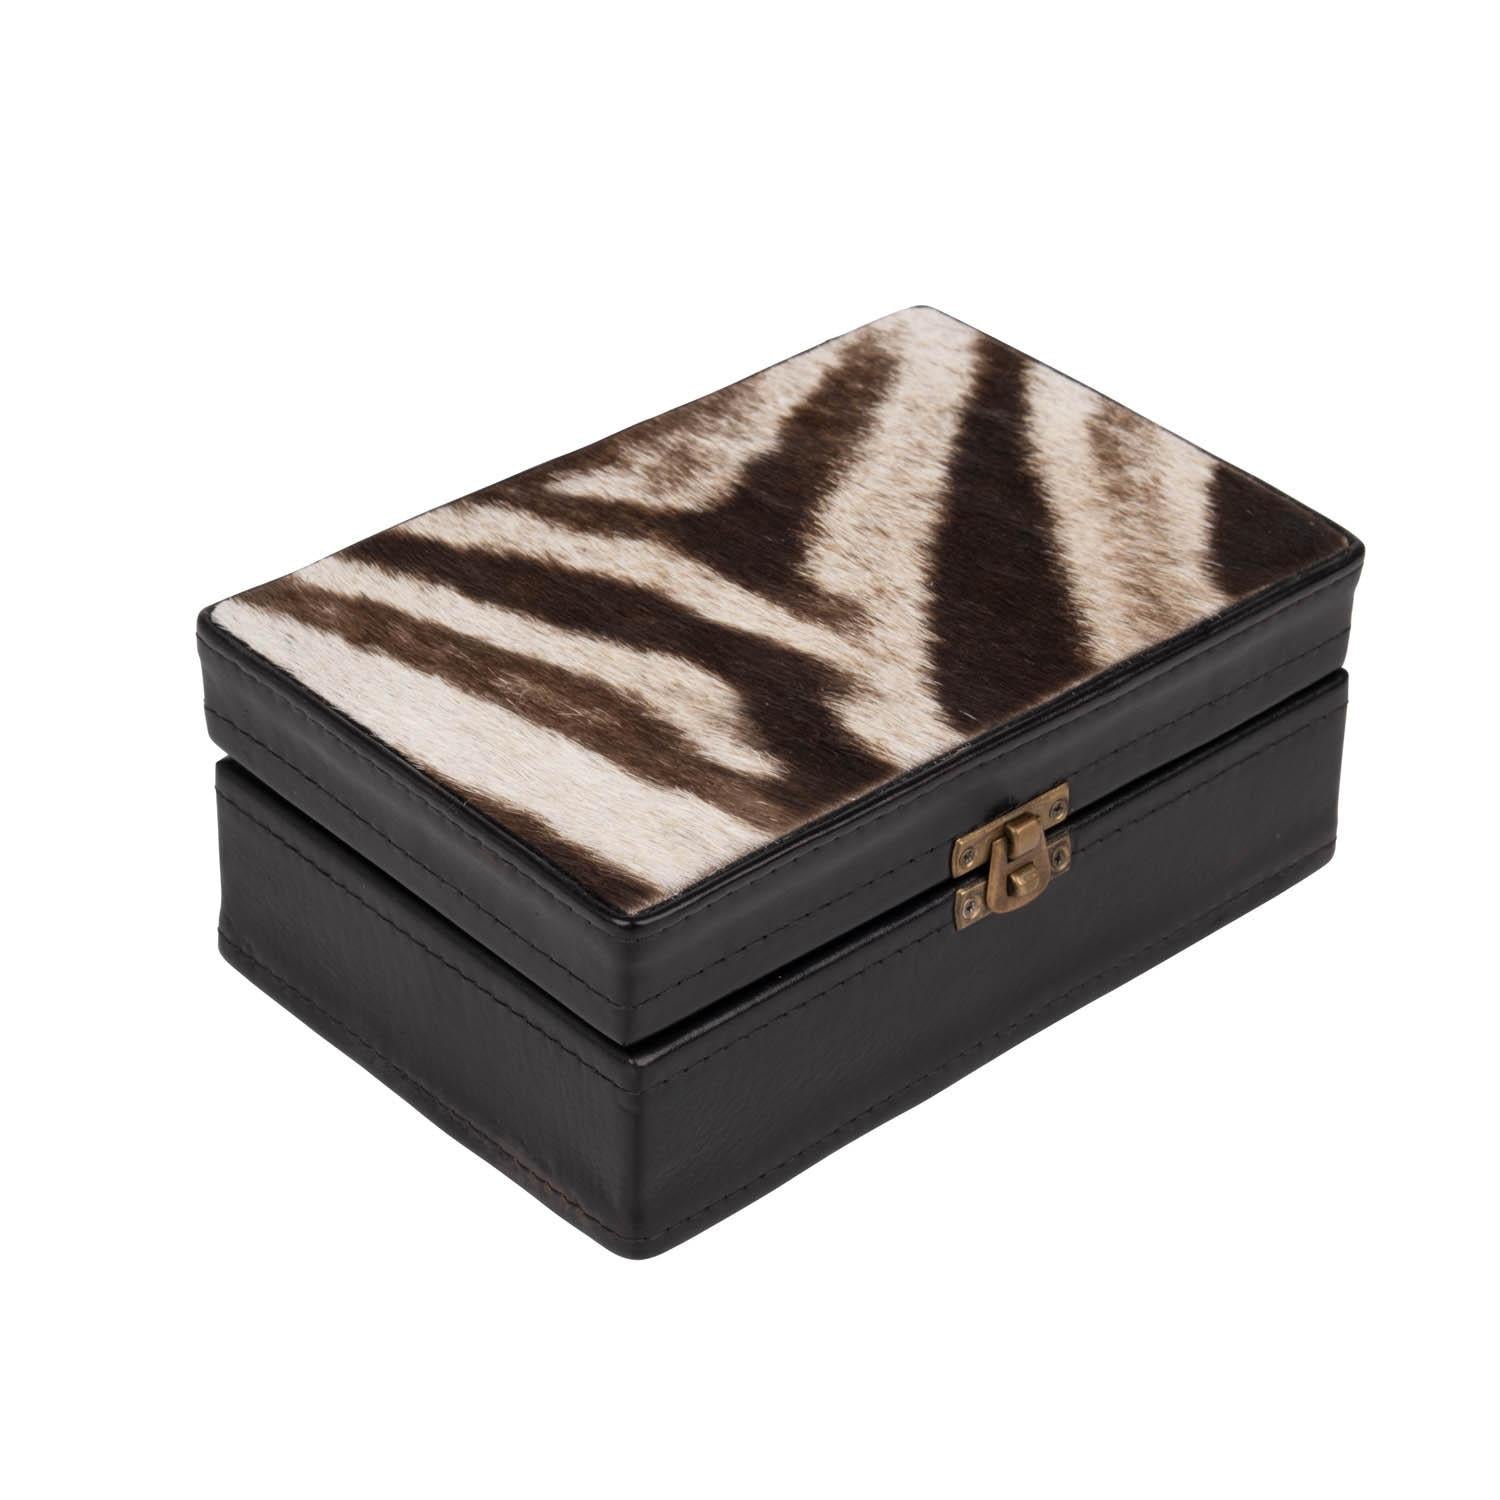 Zebra Hide & Leather Box - Small